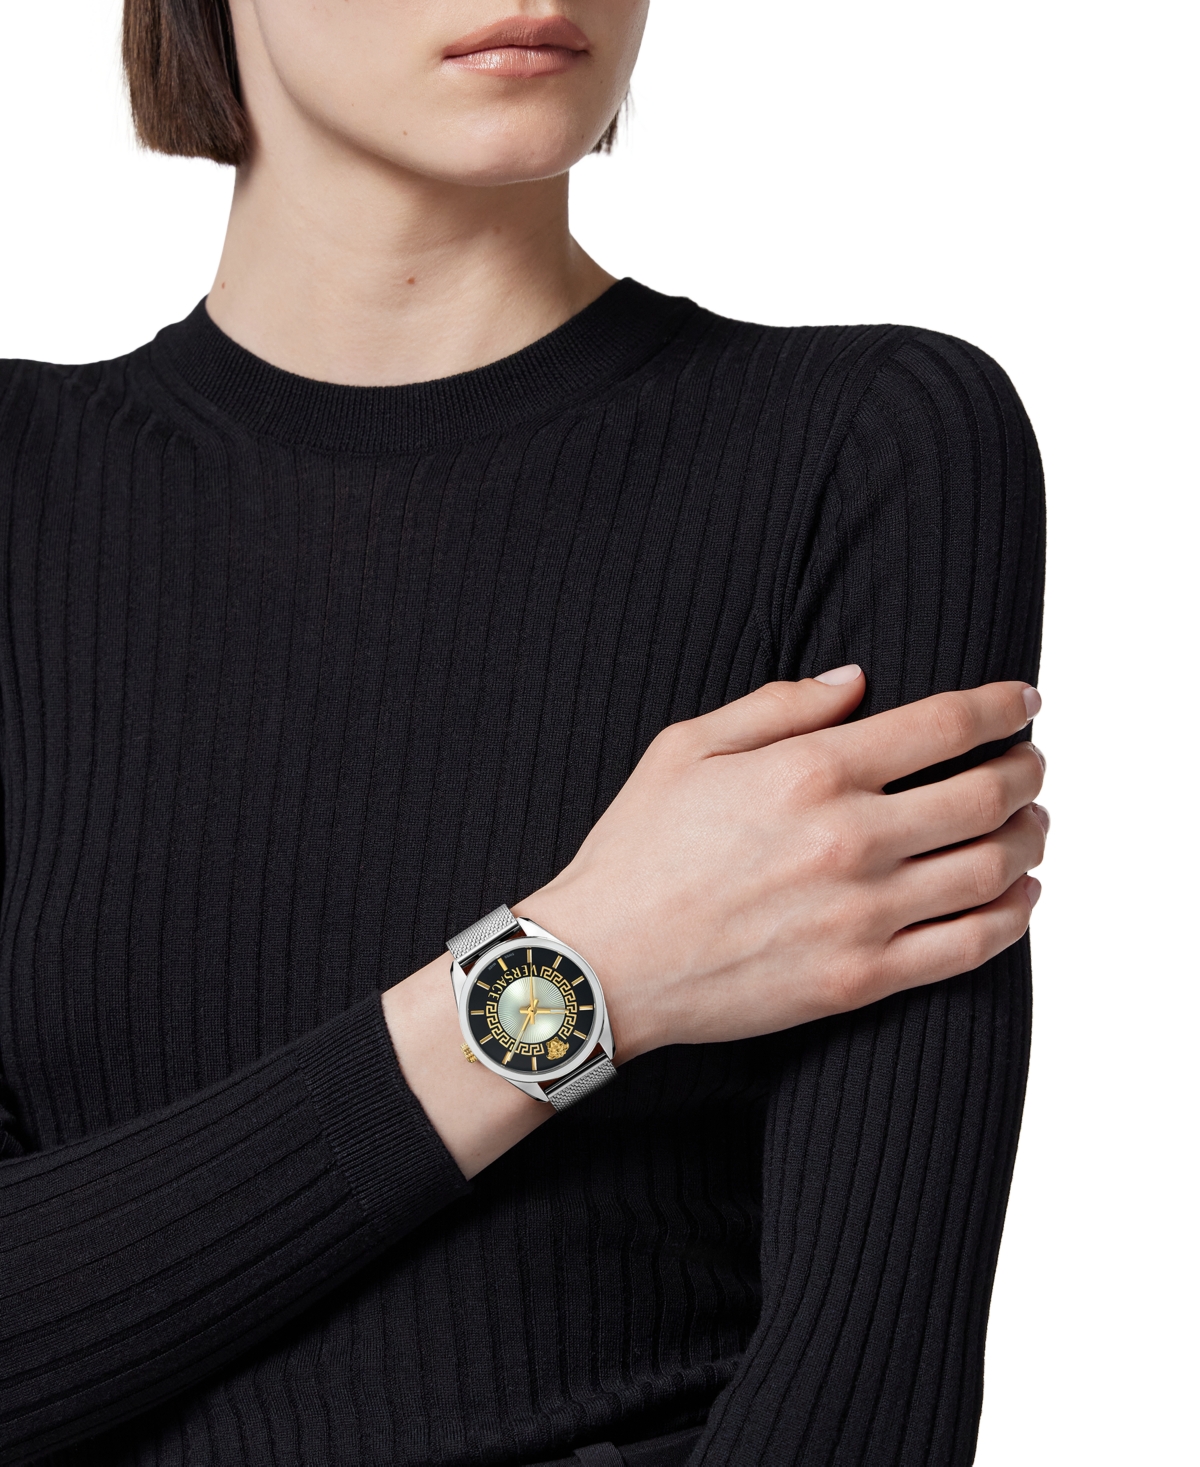 Shop Versace Women's Swiss Stainless Steel Mesh Bracelet Watch 36mm